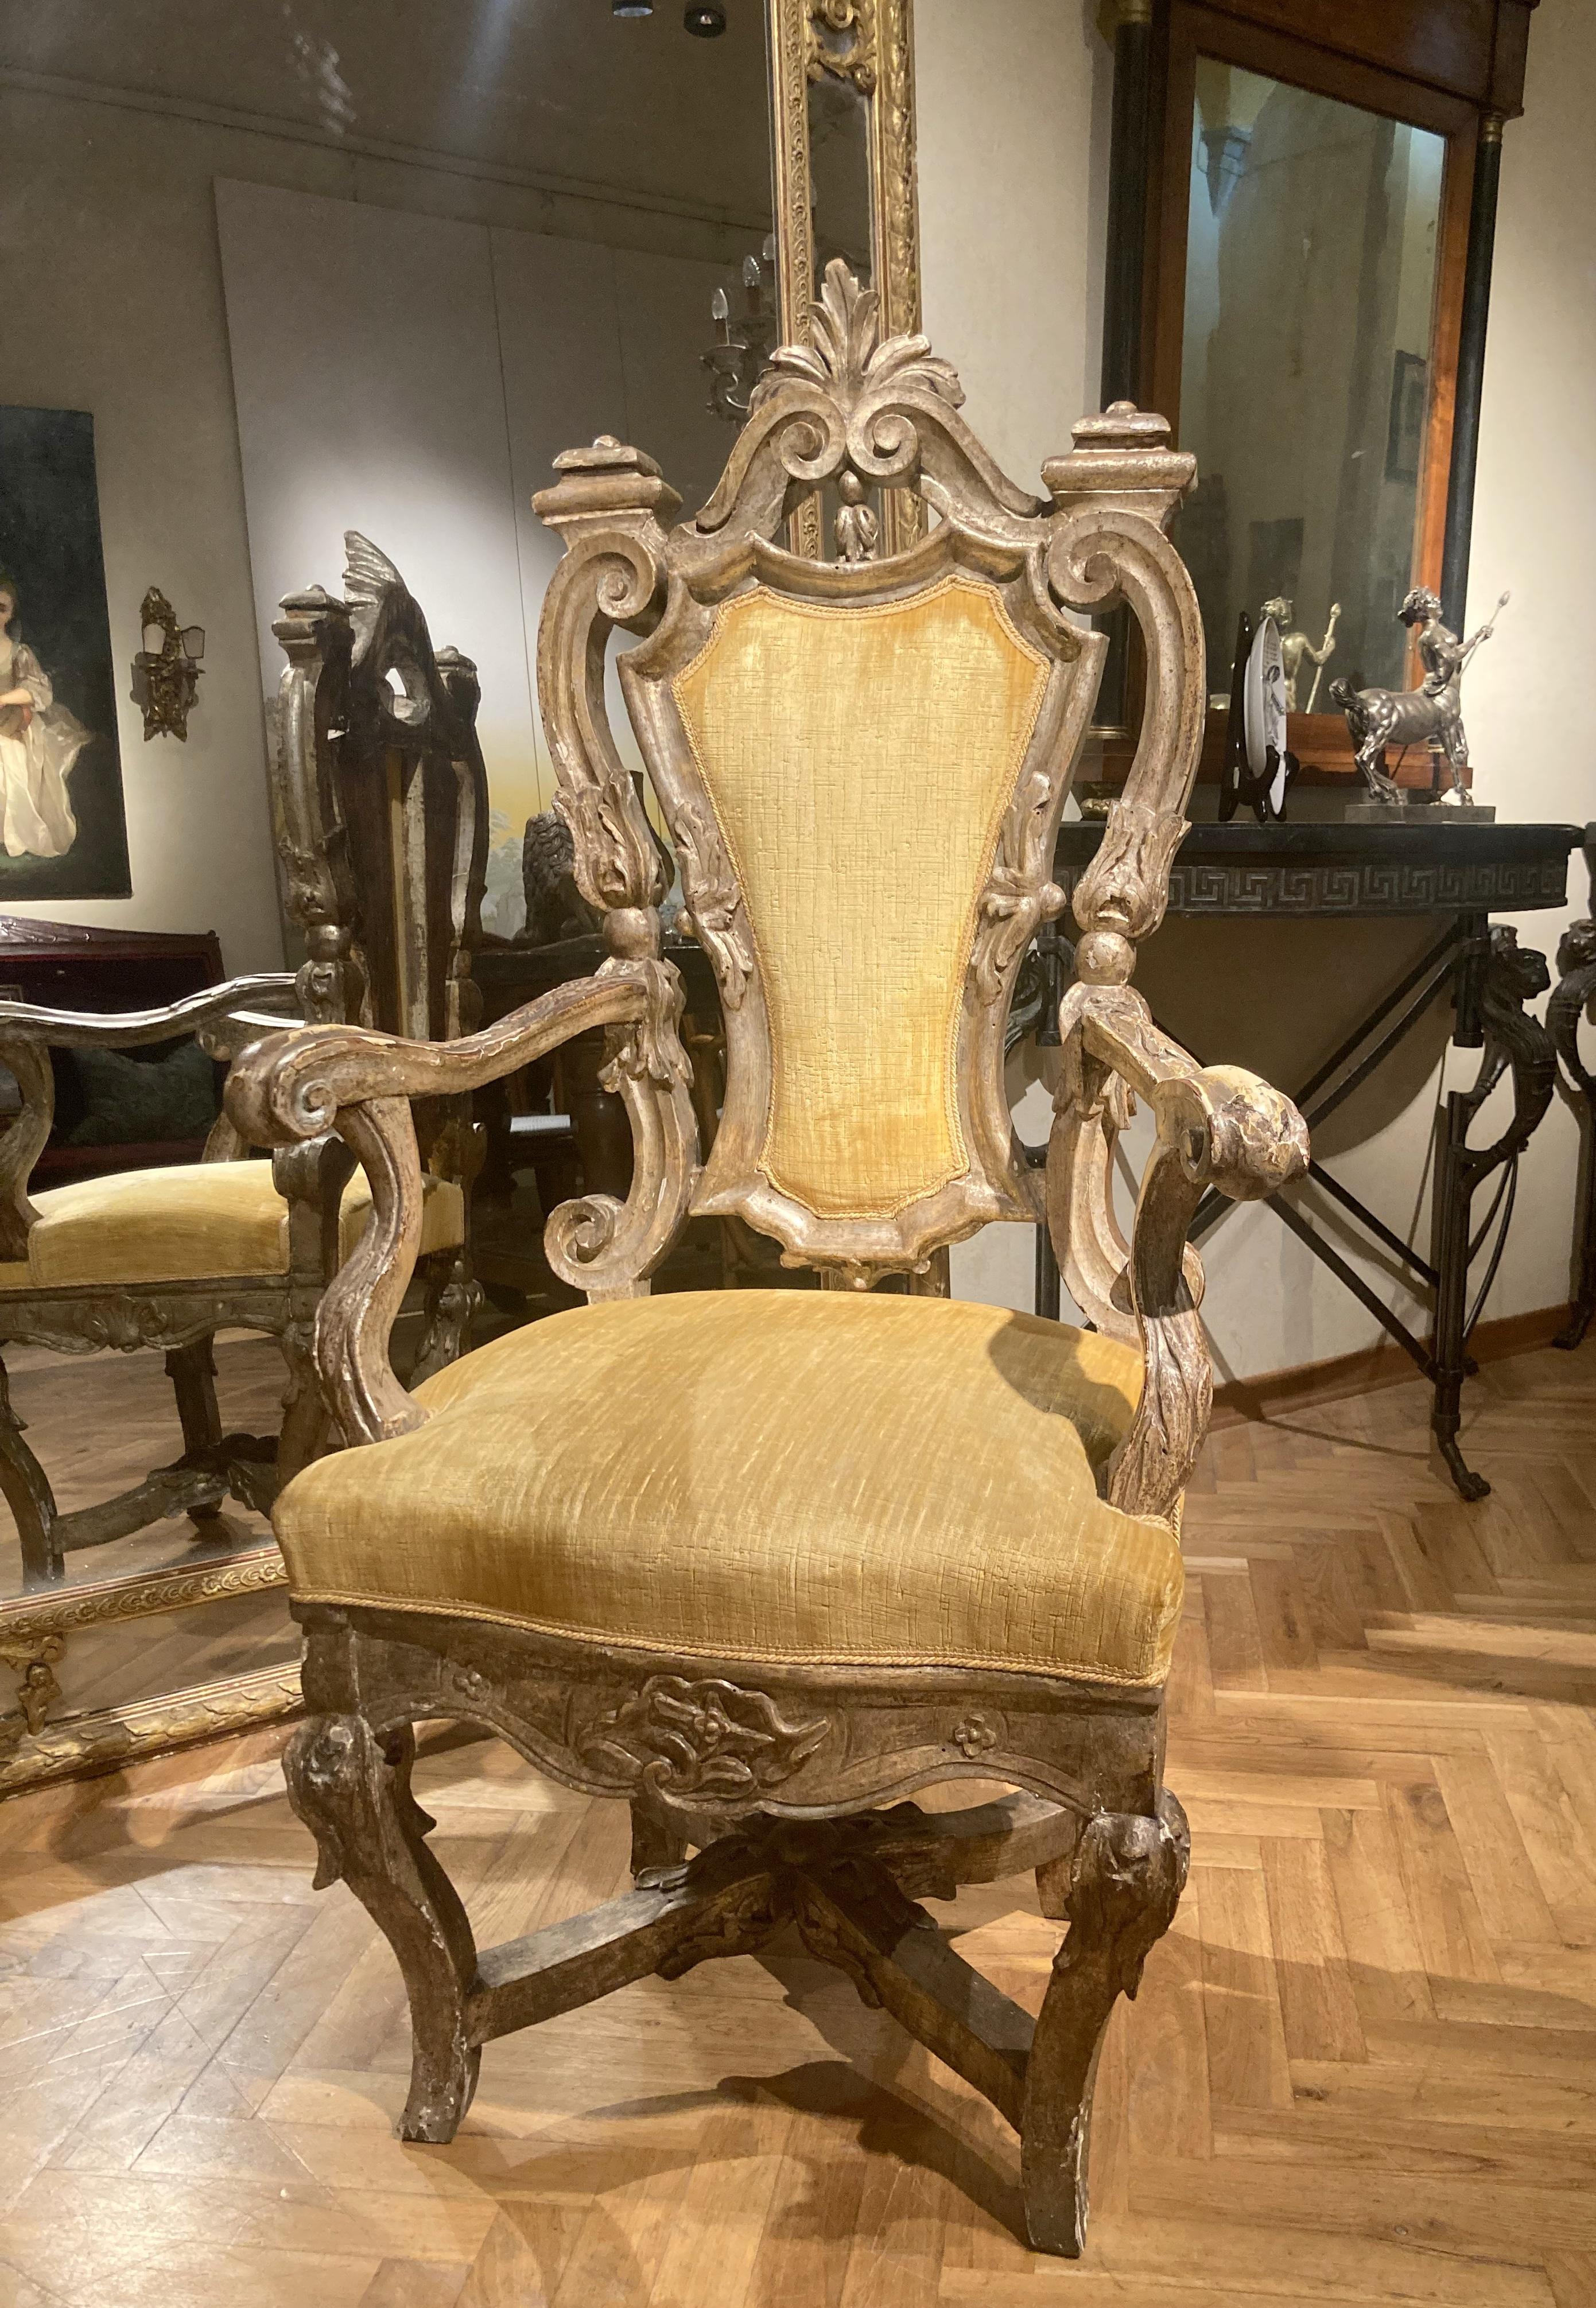 Cet ancien fauteuil trône rococo italien du XVIIe siècle, provenant d'un palais de Rome, présente des tourbillons, des boucles et des motifs feuillagés richement sculptés à la main. Le bois massif, profondément sculpté et percé, est recouvert d'une